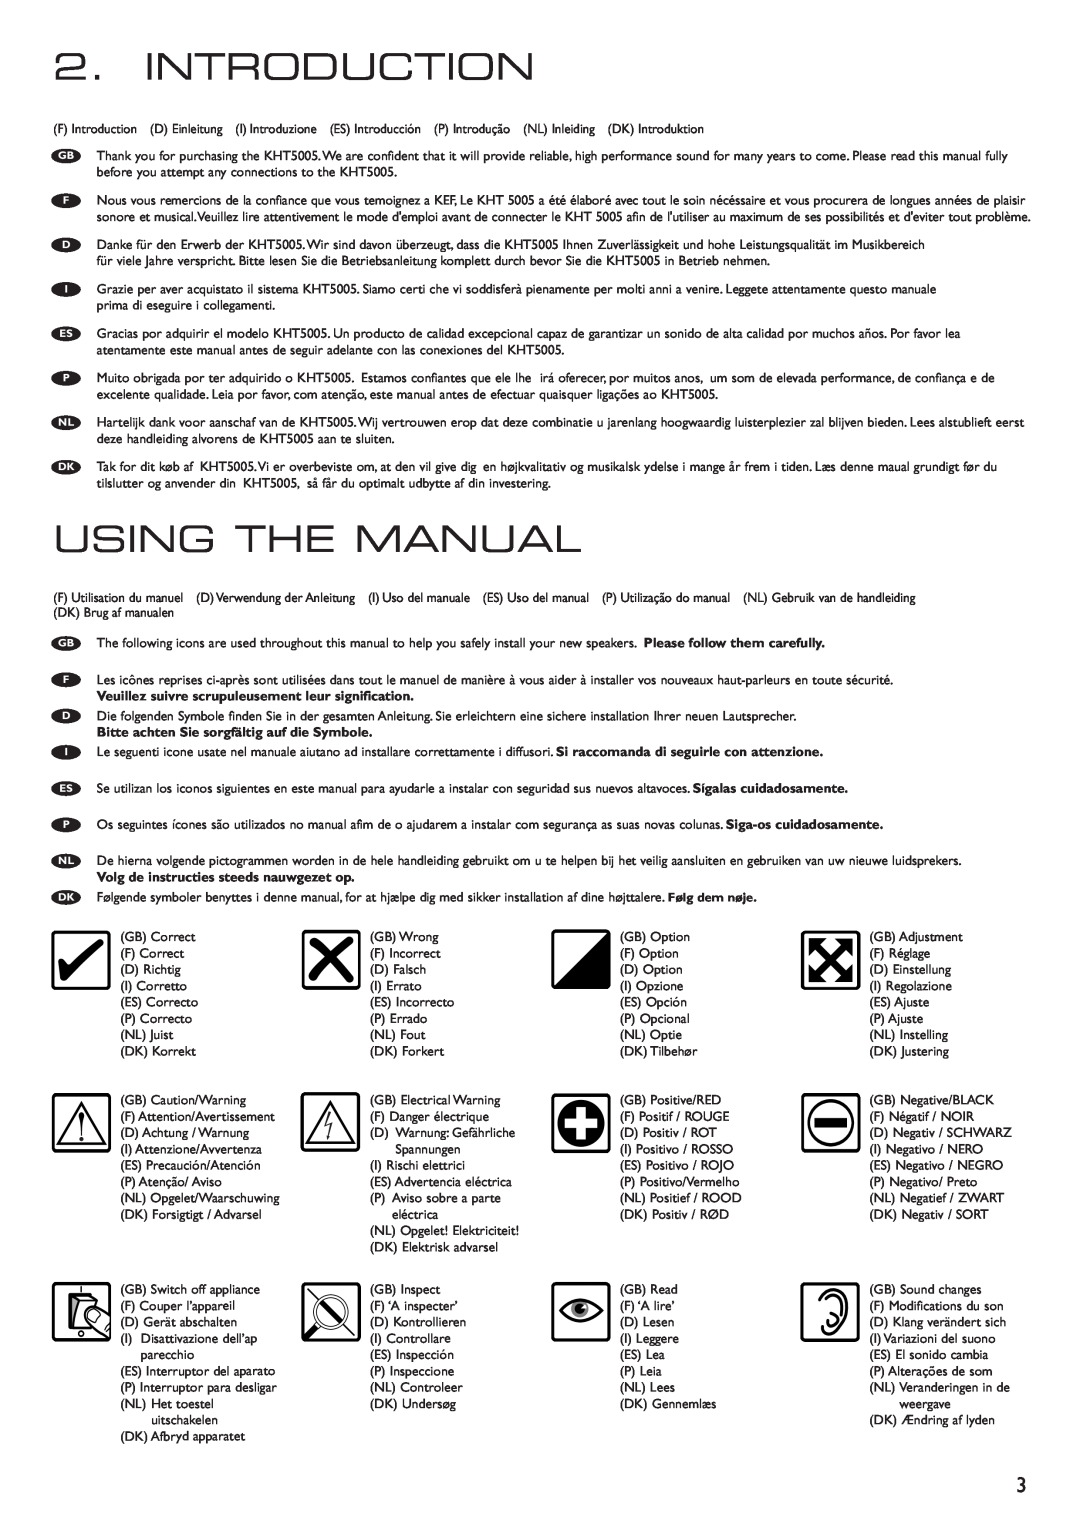 KEF Audio 290149ML installation manual Introduction, Using The Manual, Bitte achten Sie sorgfältig auf die Symbole 